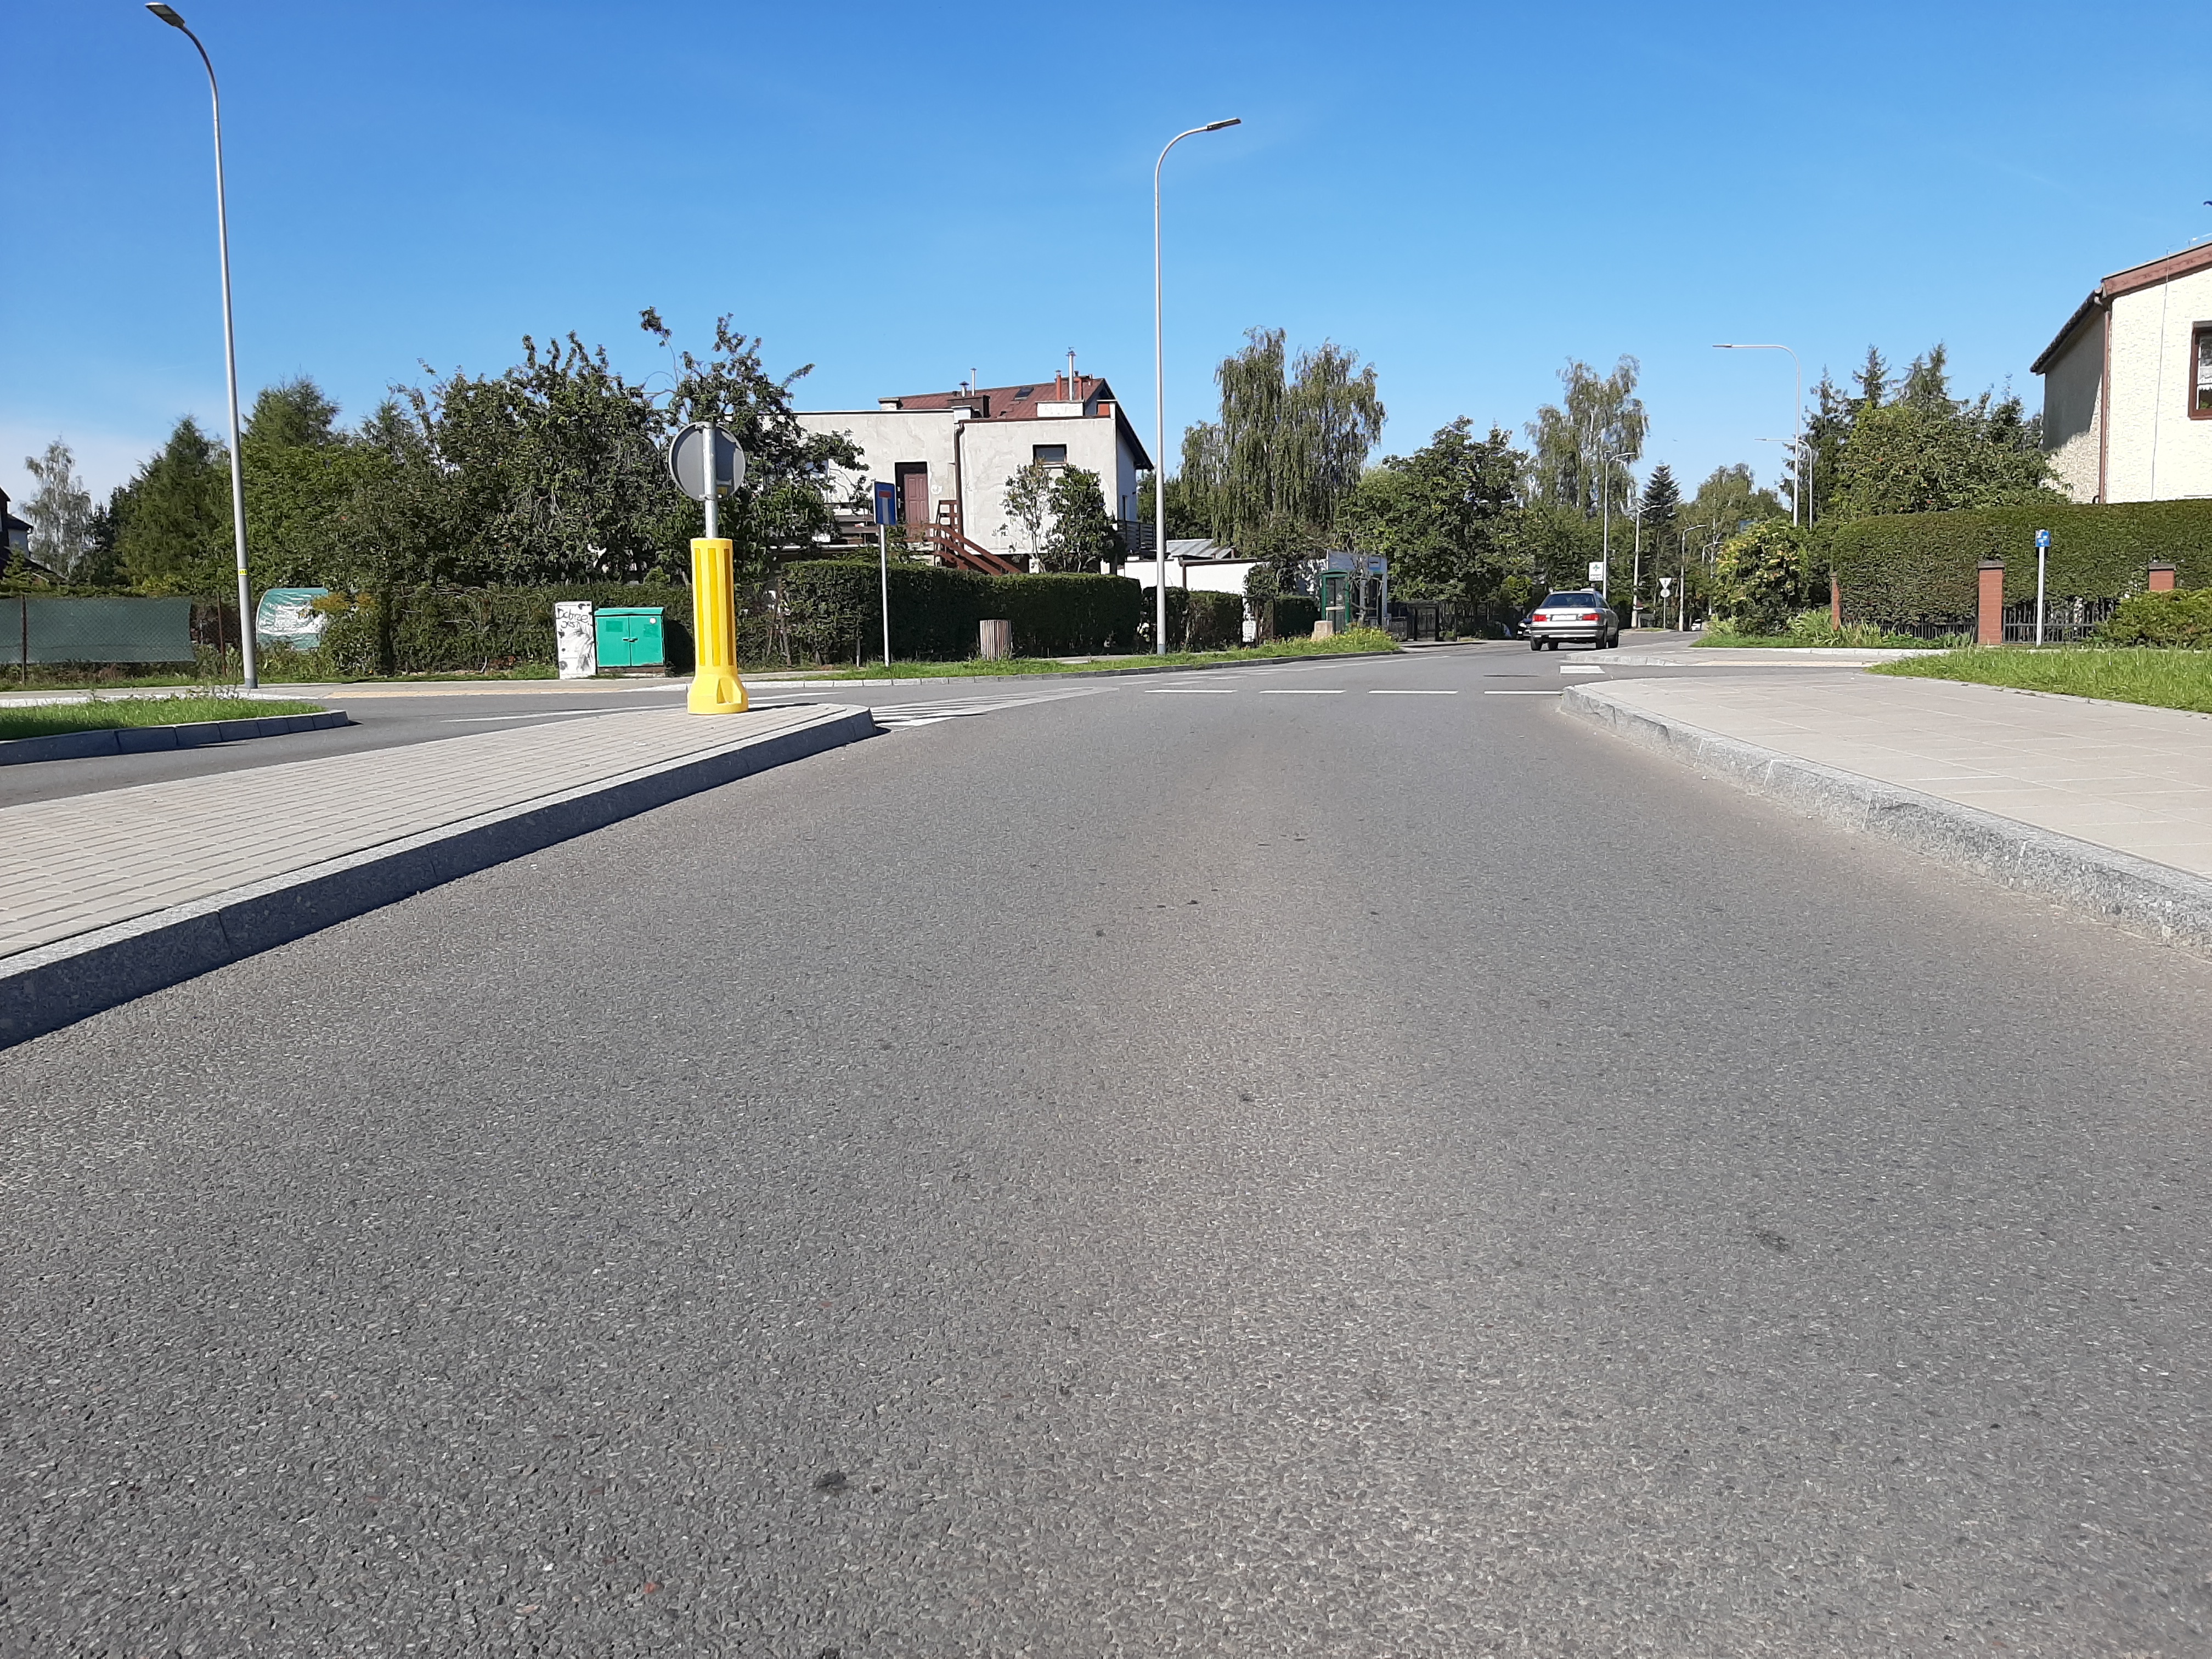 Zdjęcie przedstawia efekt wymiany nawierzchni jezdni na ulicy Niedziałkowskiego na odcinku od skrzyżowania z ulicą Sołdka do skrzyżowania z ulicą Koziorożca.